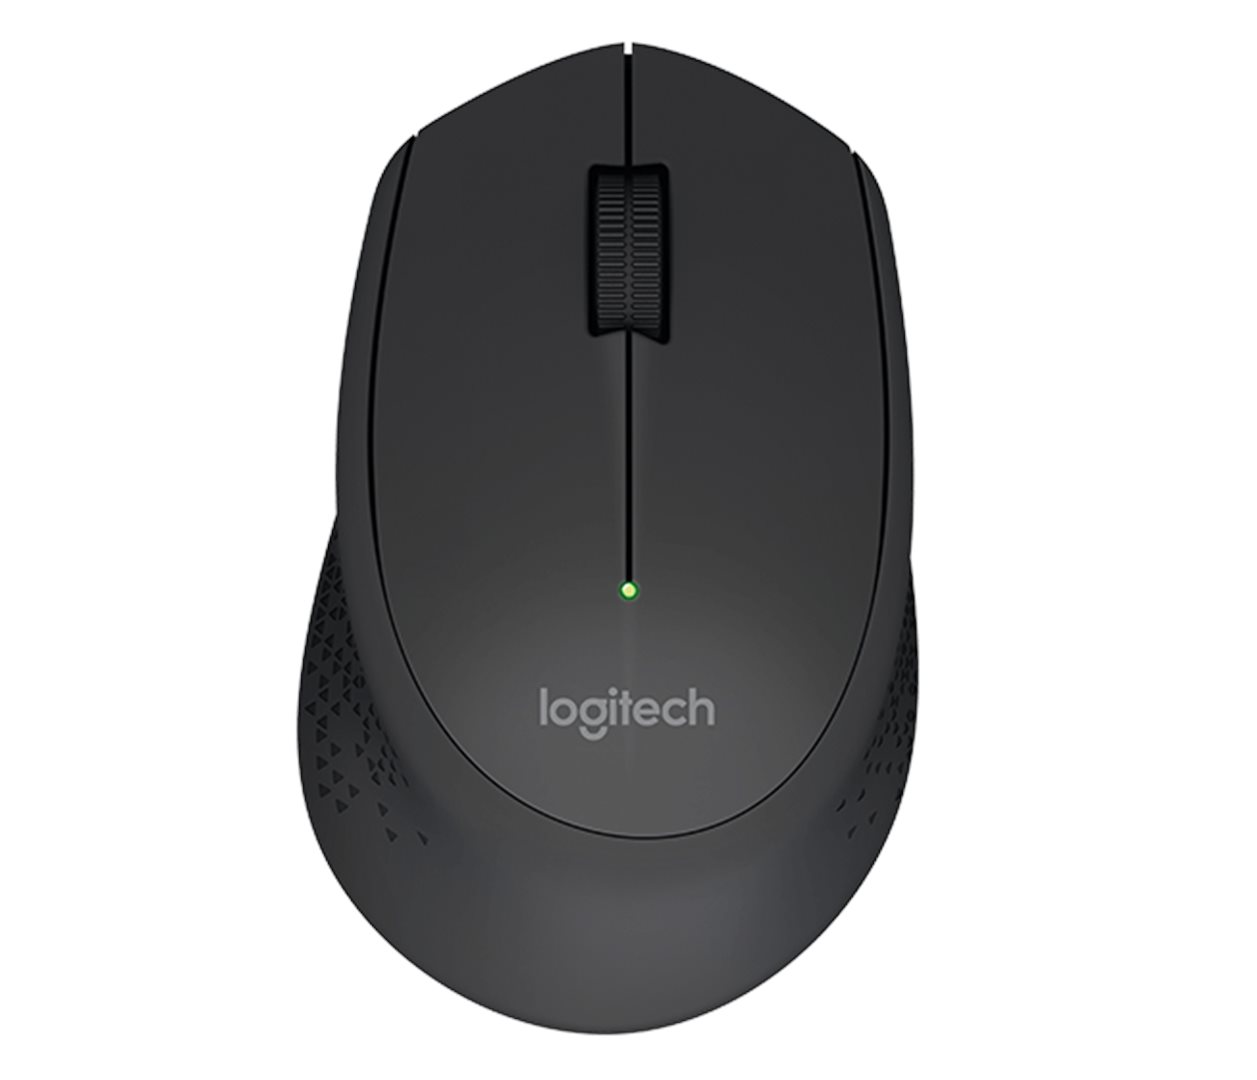 Ergonomická myš HP Dual Mode Mouse 300, bezdrátová, černá